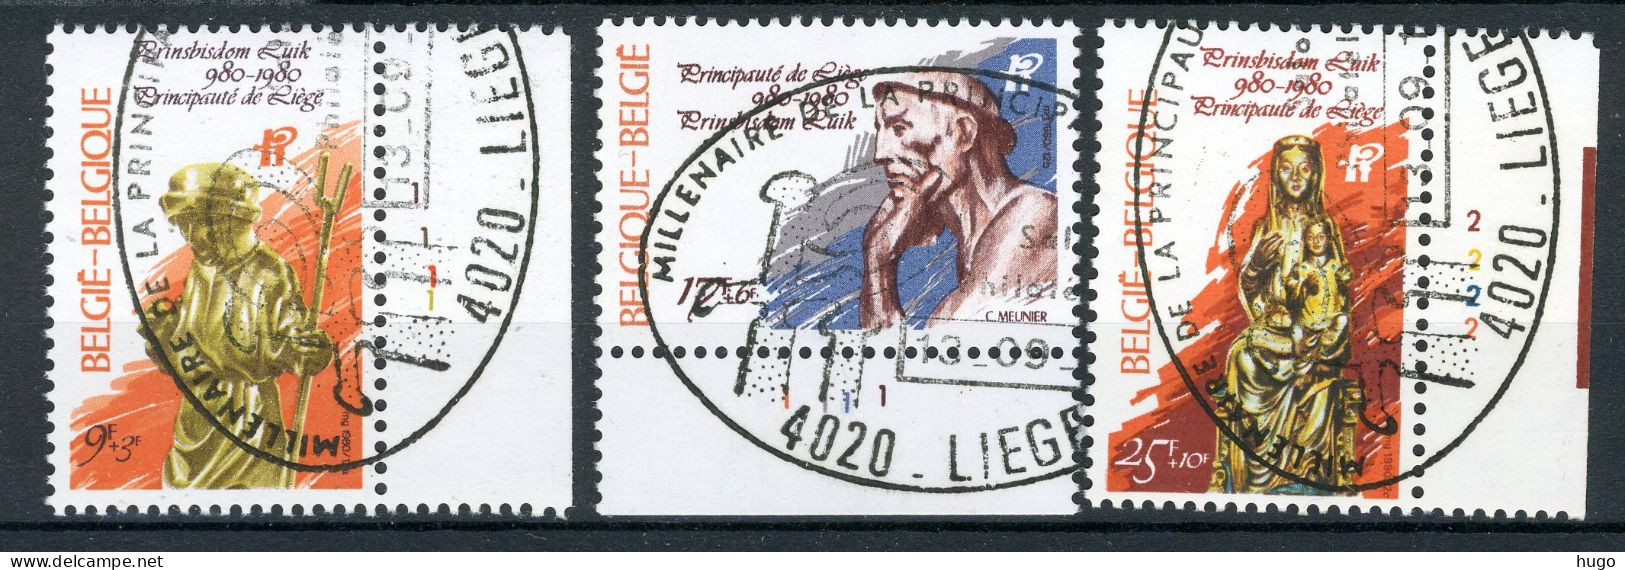 (B) 1987/1989 MNH FDC 1980 - 1000 Jaar Prinsbisdom Van Luik. - Unused Stamps